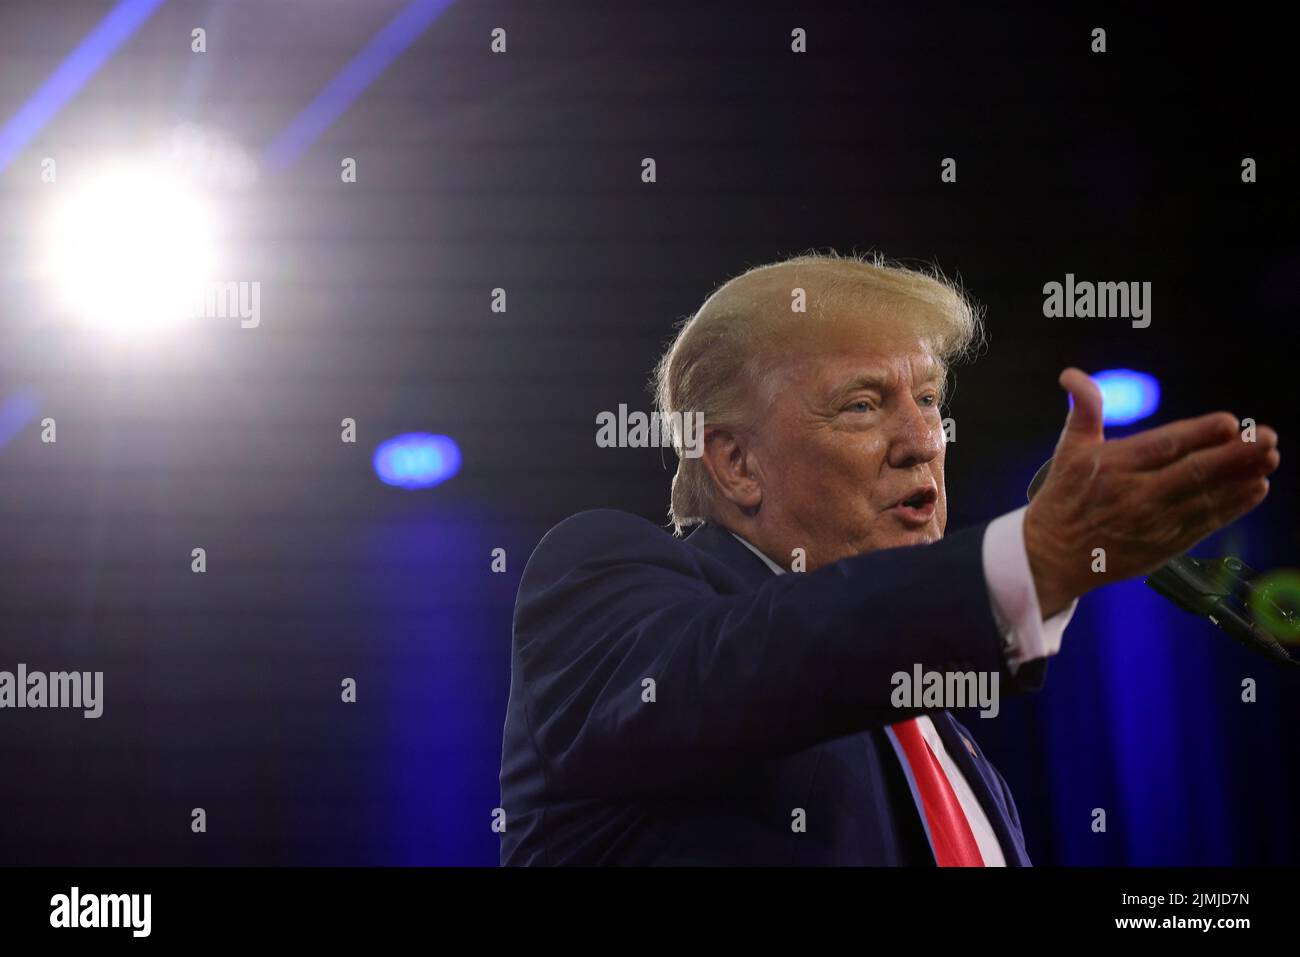 El ex presidente estadounidense Donald Trump habla en la Conferencia de Acción Política Conservadora (CPAC) en Dallas, Texas, EE.UU., el 6 de agosto de 2022. REUTERS/Brian Snyder Foto de stock